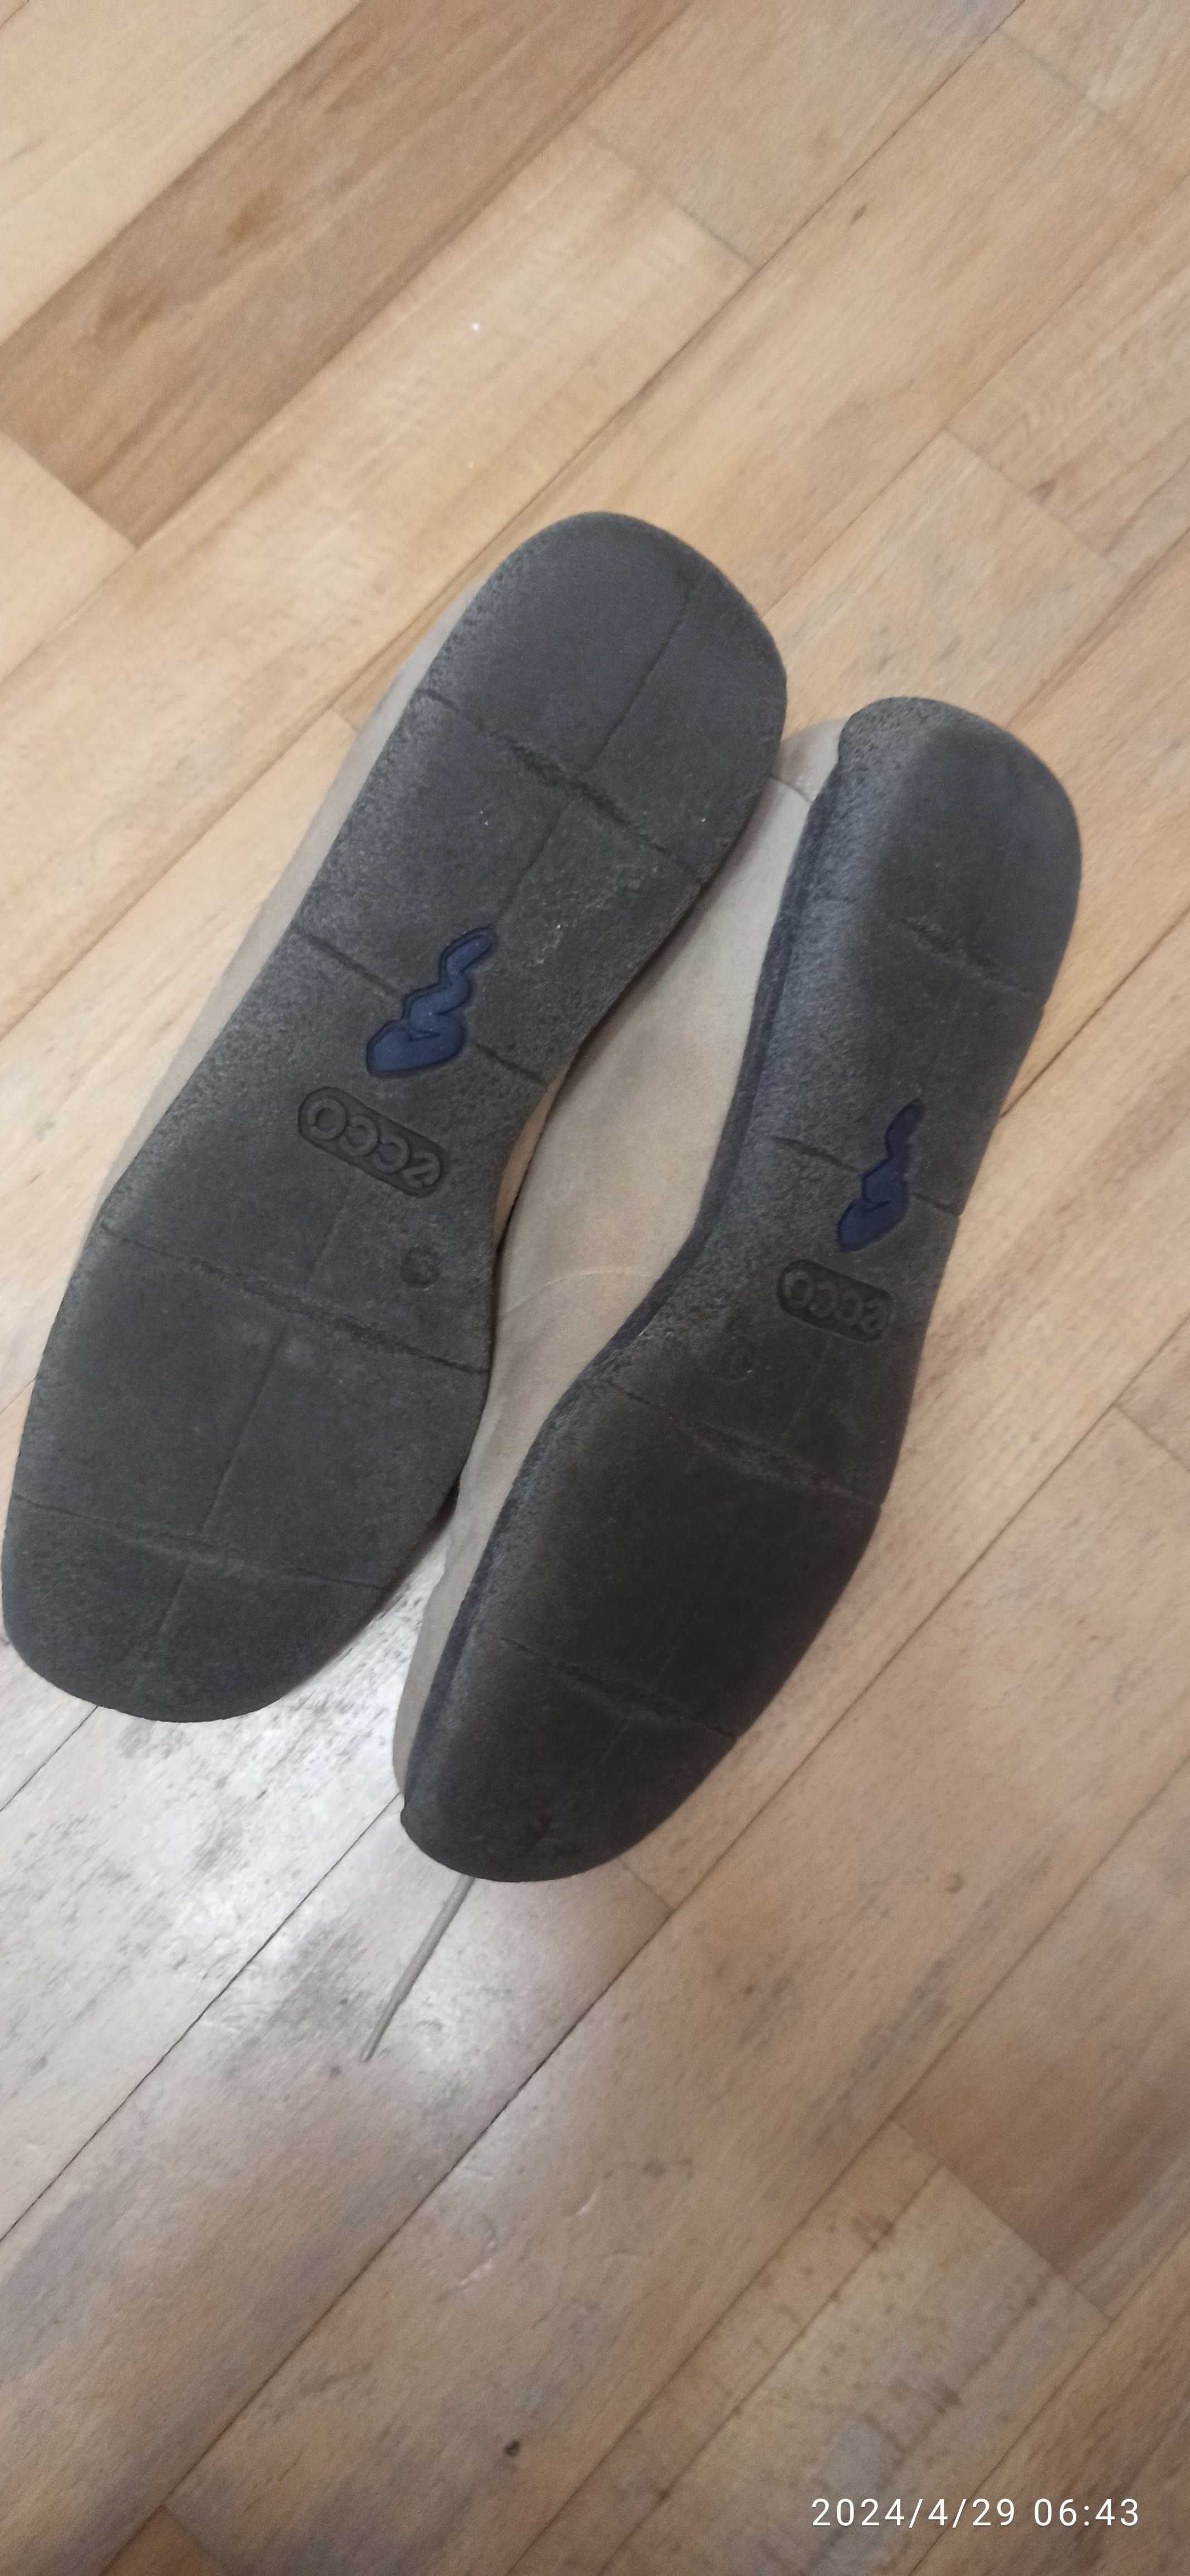 Мужские туфли 42 размер фирмы Ecco